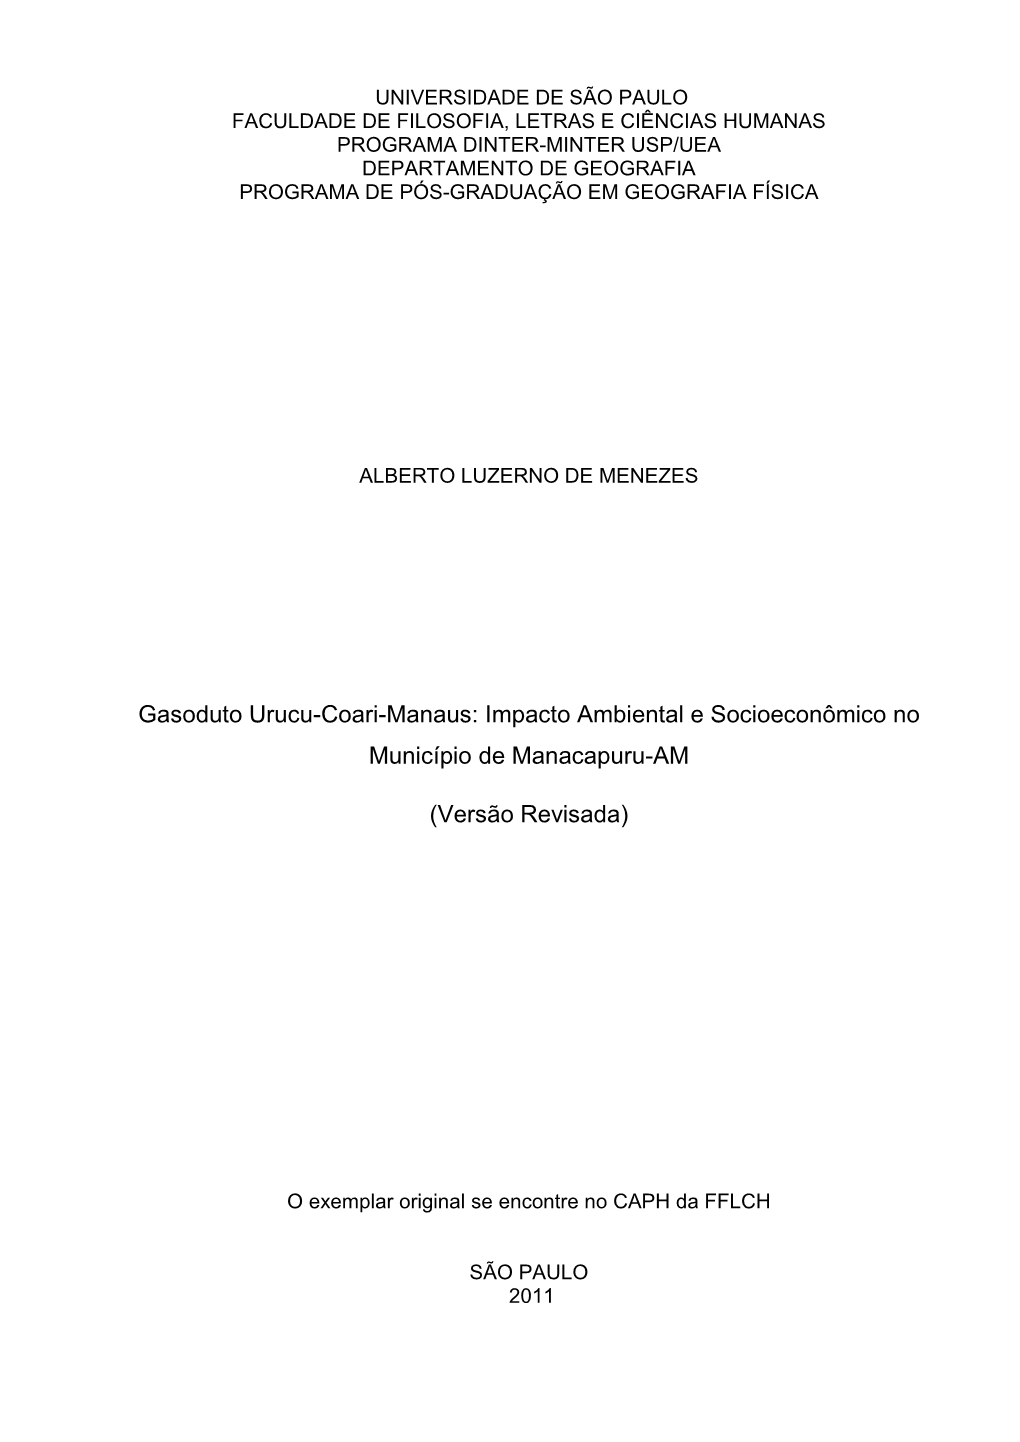 Gasoduto Urucu-Coari-Manaus: Impacto Ambiental E Socioeconômico No Município De Manacapuru-AM